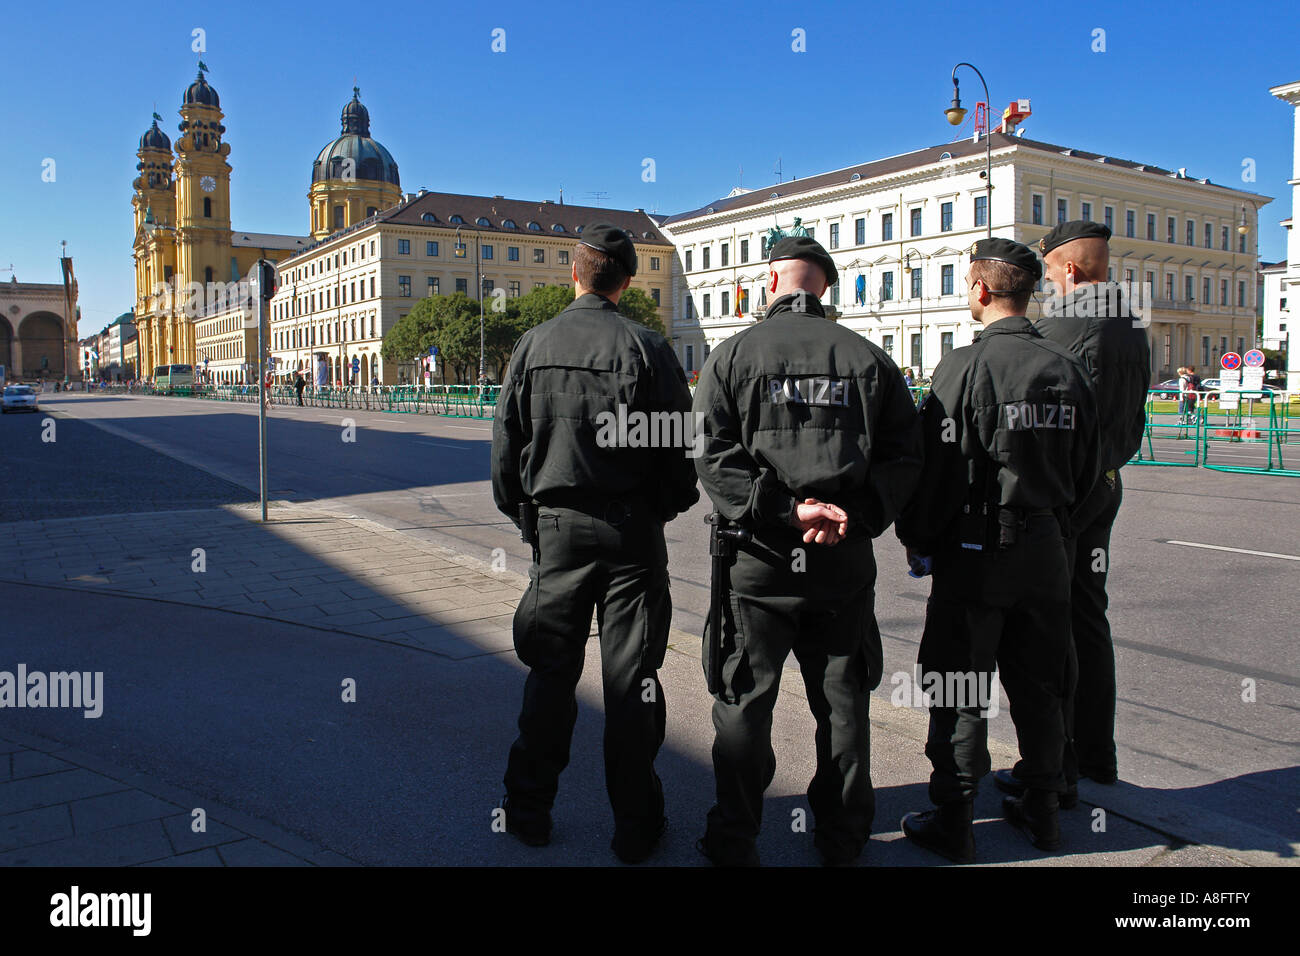 Les policiers qui patrouillent le long de barrières métalliques à Munich Allemagne Bavière Ludwigstrasse Banque D'Images